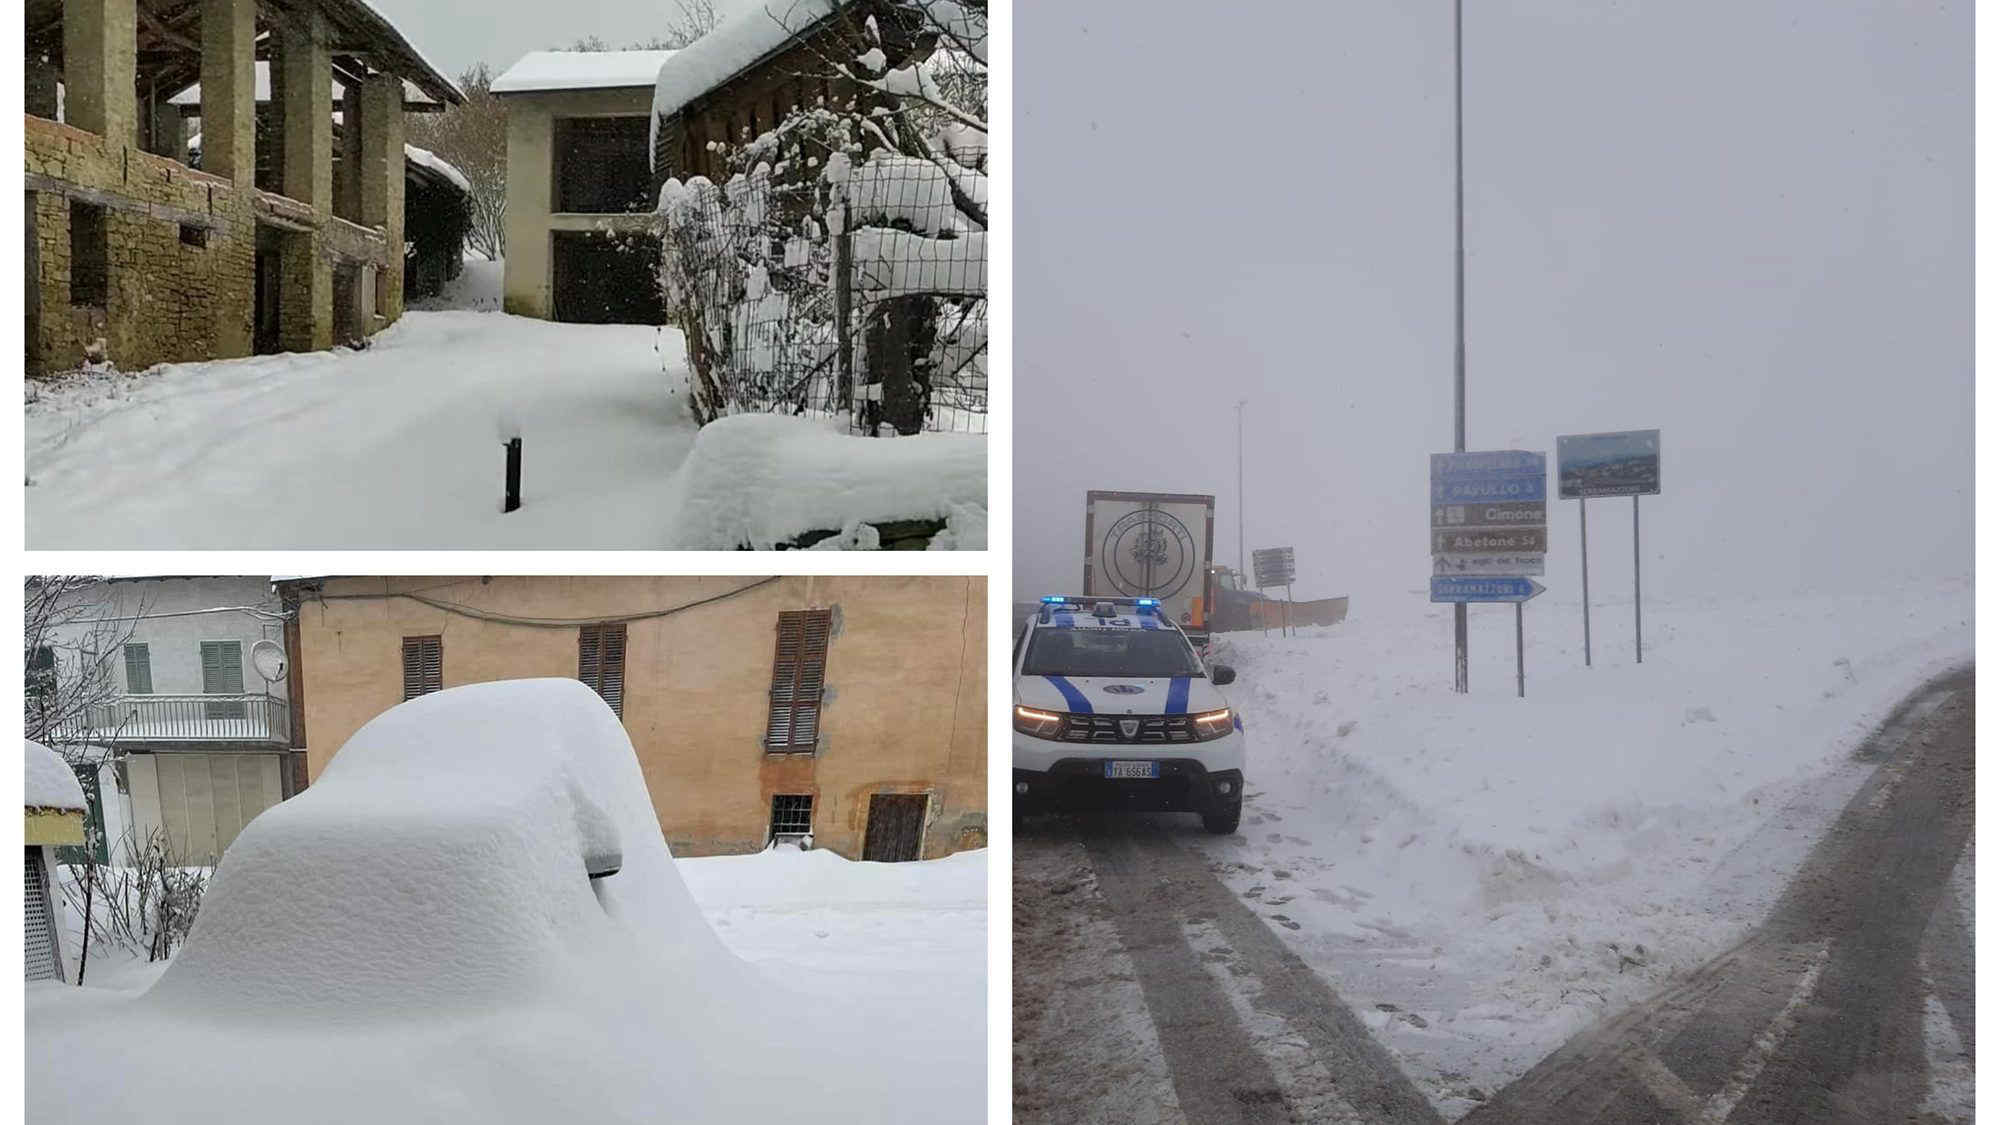 Nevicate in Piemonte e in Emilia Romagna: ecco le immagini